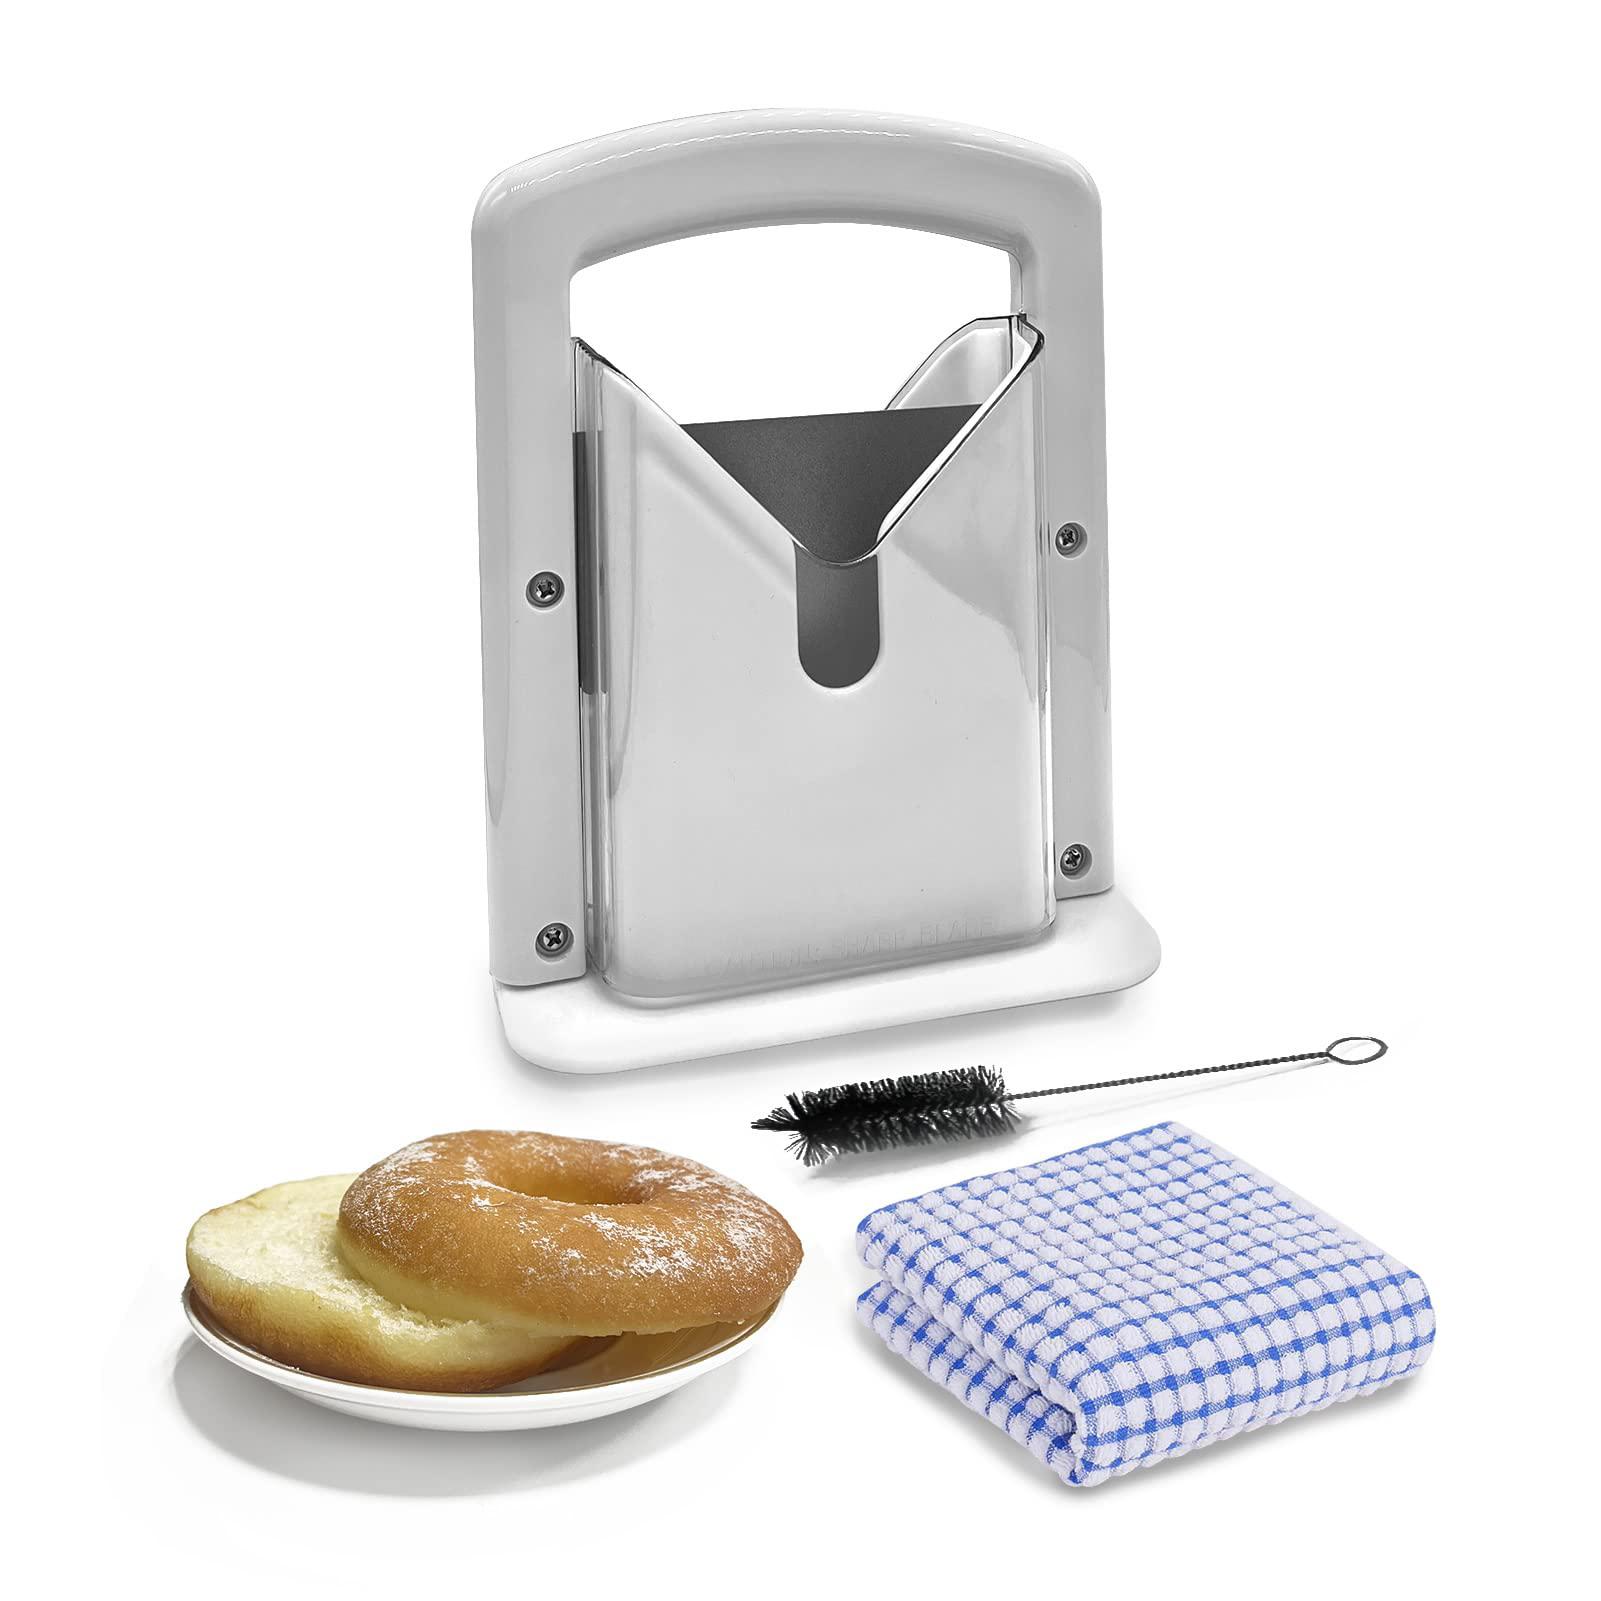 nezih bagel slicer, bagel cuttter,home kitchen bread slicing gadget, stainless steel, white